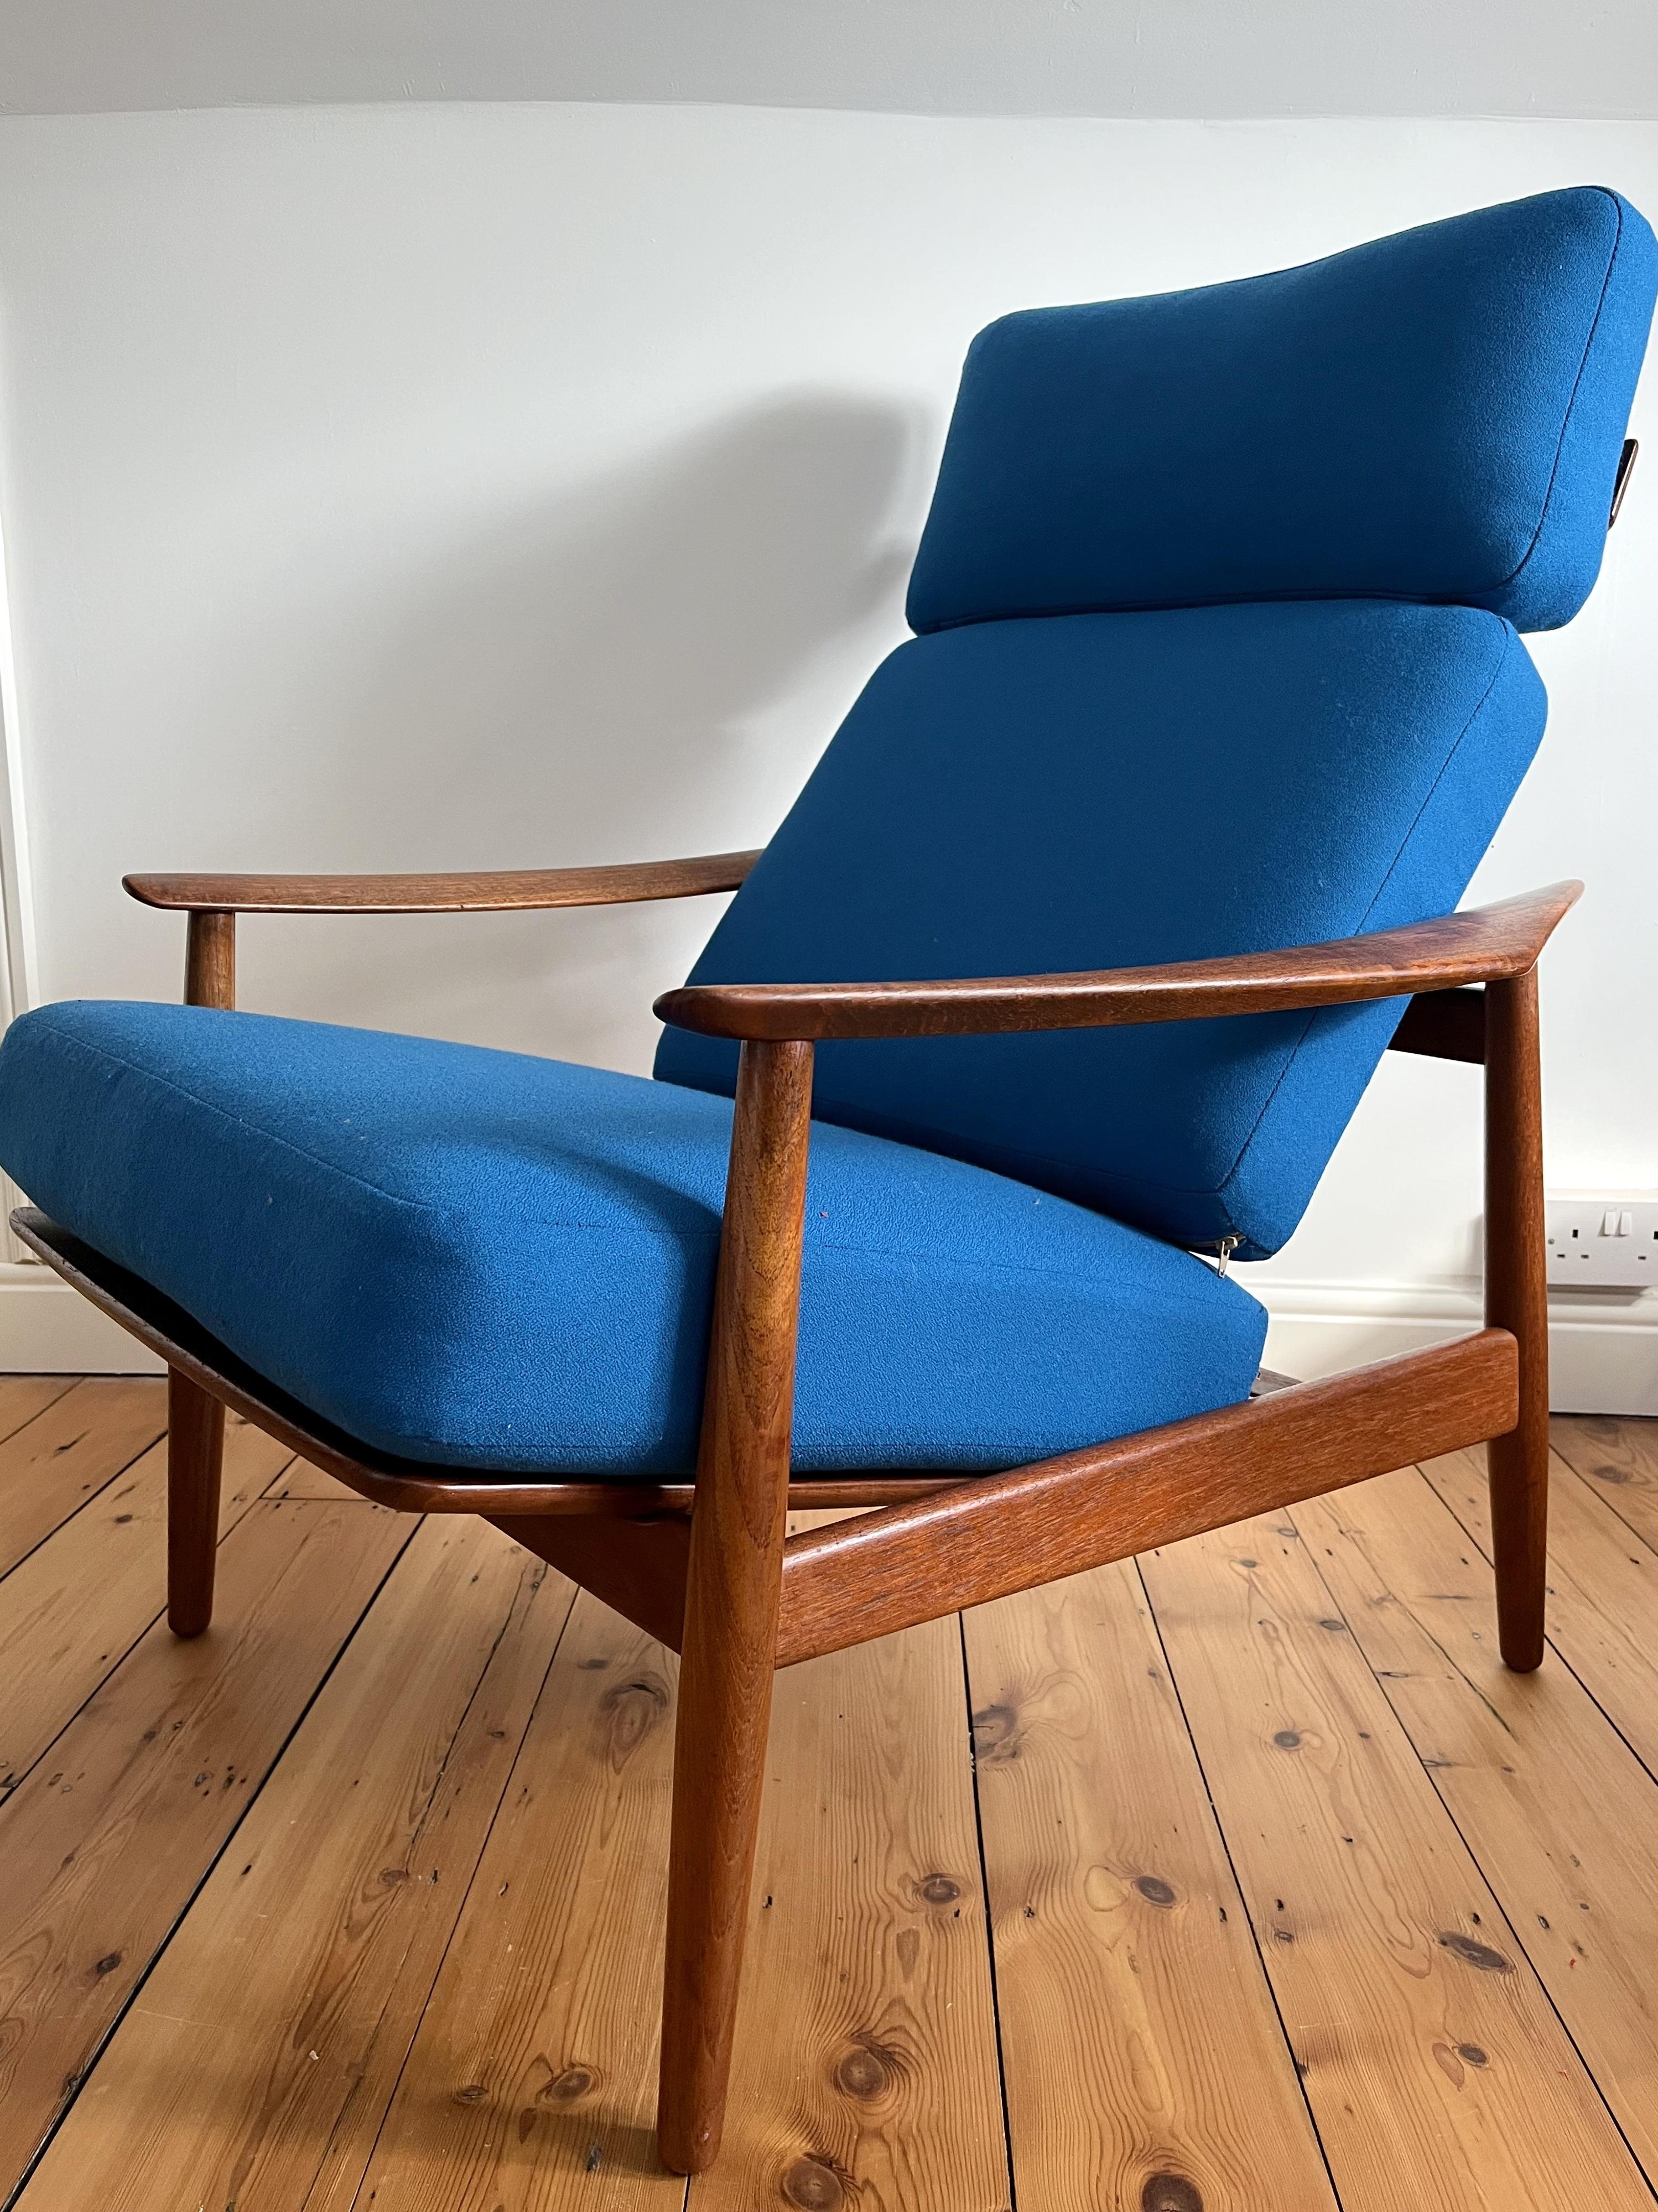 Chaise à haut dossier Arne Vodder FD164 fabriquée par France and Son, Danemark.

Le fauteuil peut être réglé sur 3 positions différentes, de la position verticale à la position allongée.

La chaise est en très bon état.

Le cadre a été huilé